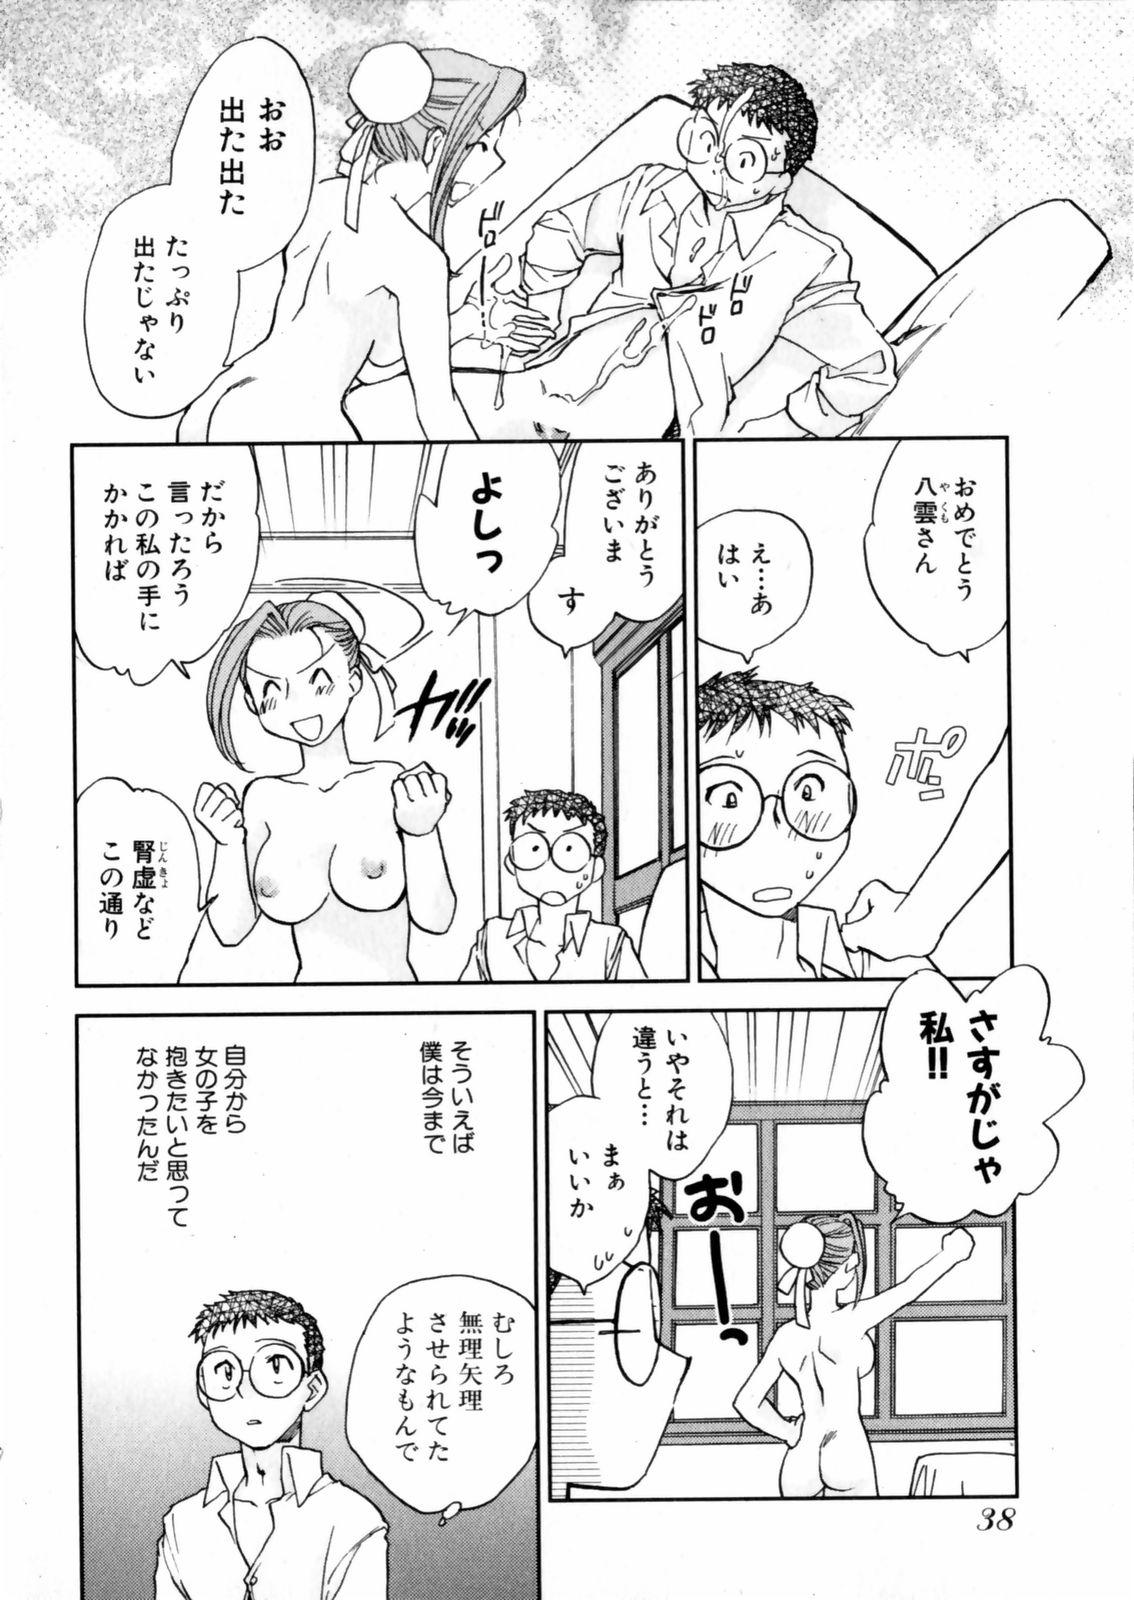 [Okano Ahiru] Hanasake ! Otome Juku (Otome Private Tutoring School) Vol.2 39